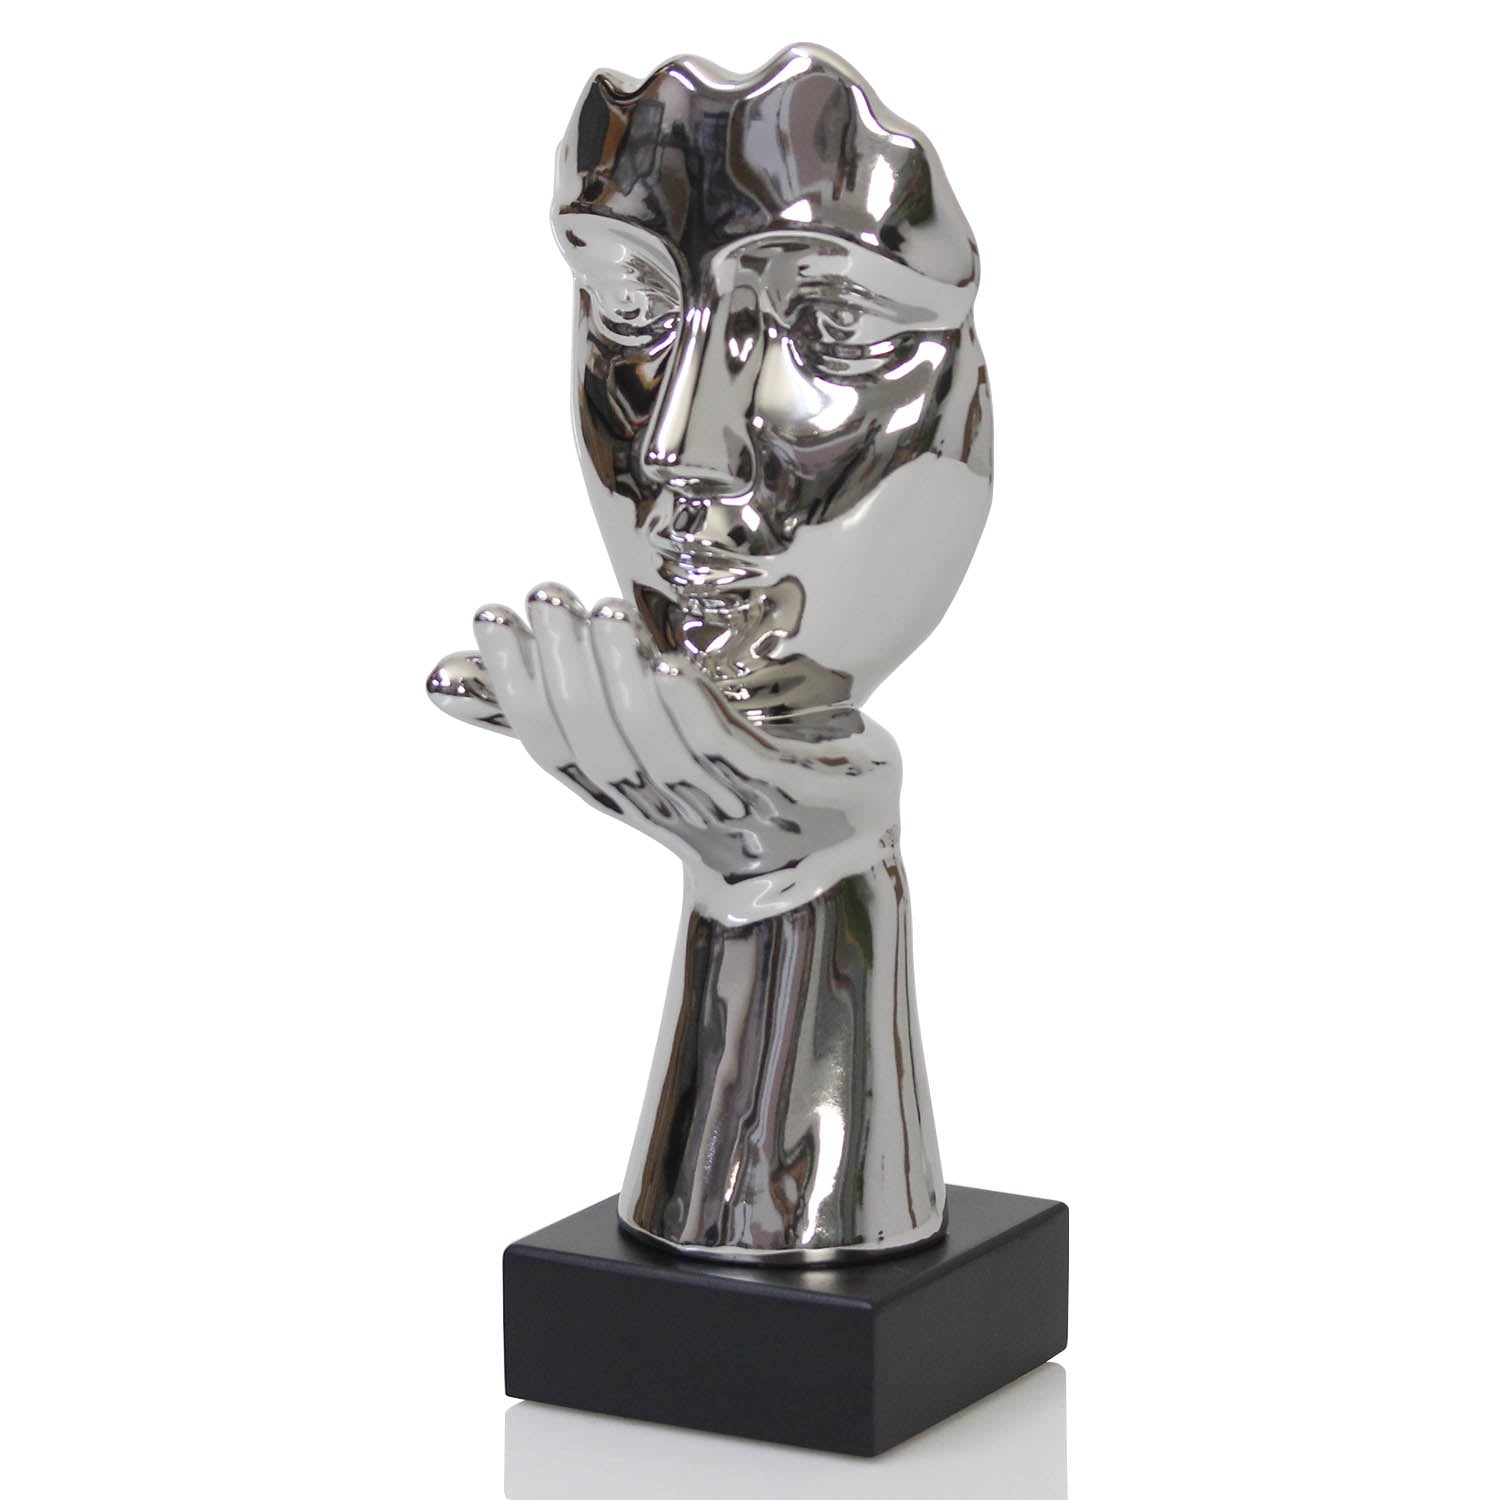 32cm Silver Art Face Blow Kissing Ornament Decor